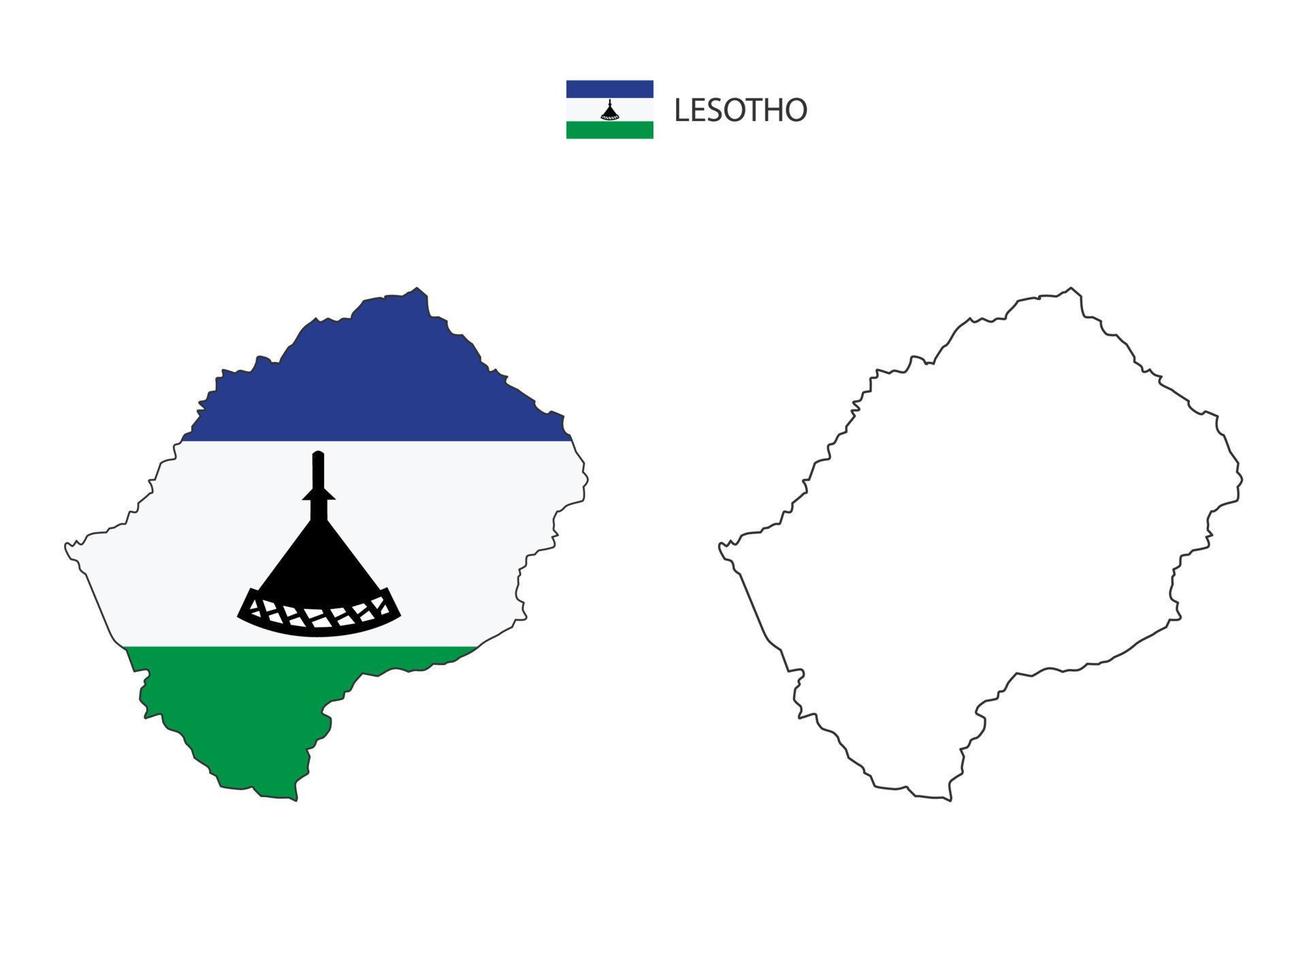 vector de ciudad de mapa de lesotho dividido por estilo de simplicidad de contorno. tiene 2 versiones, versión de línea delgada negra y versión de color de bandera de país. ambos mapas estaban en el fondo blanco.